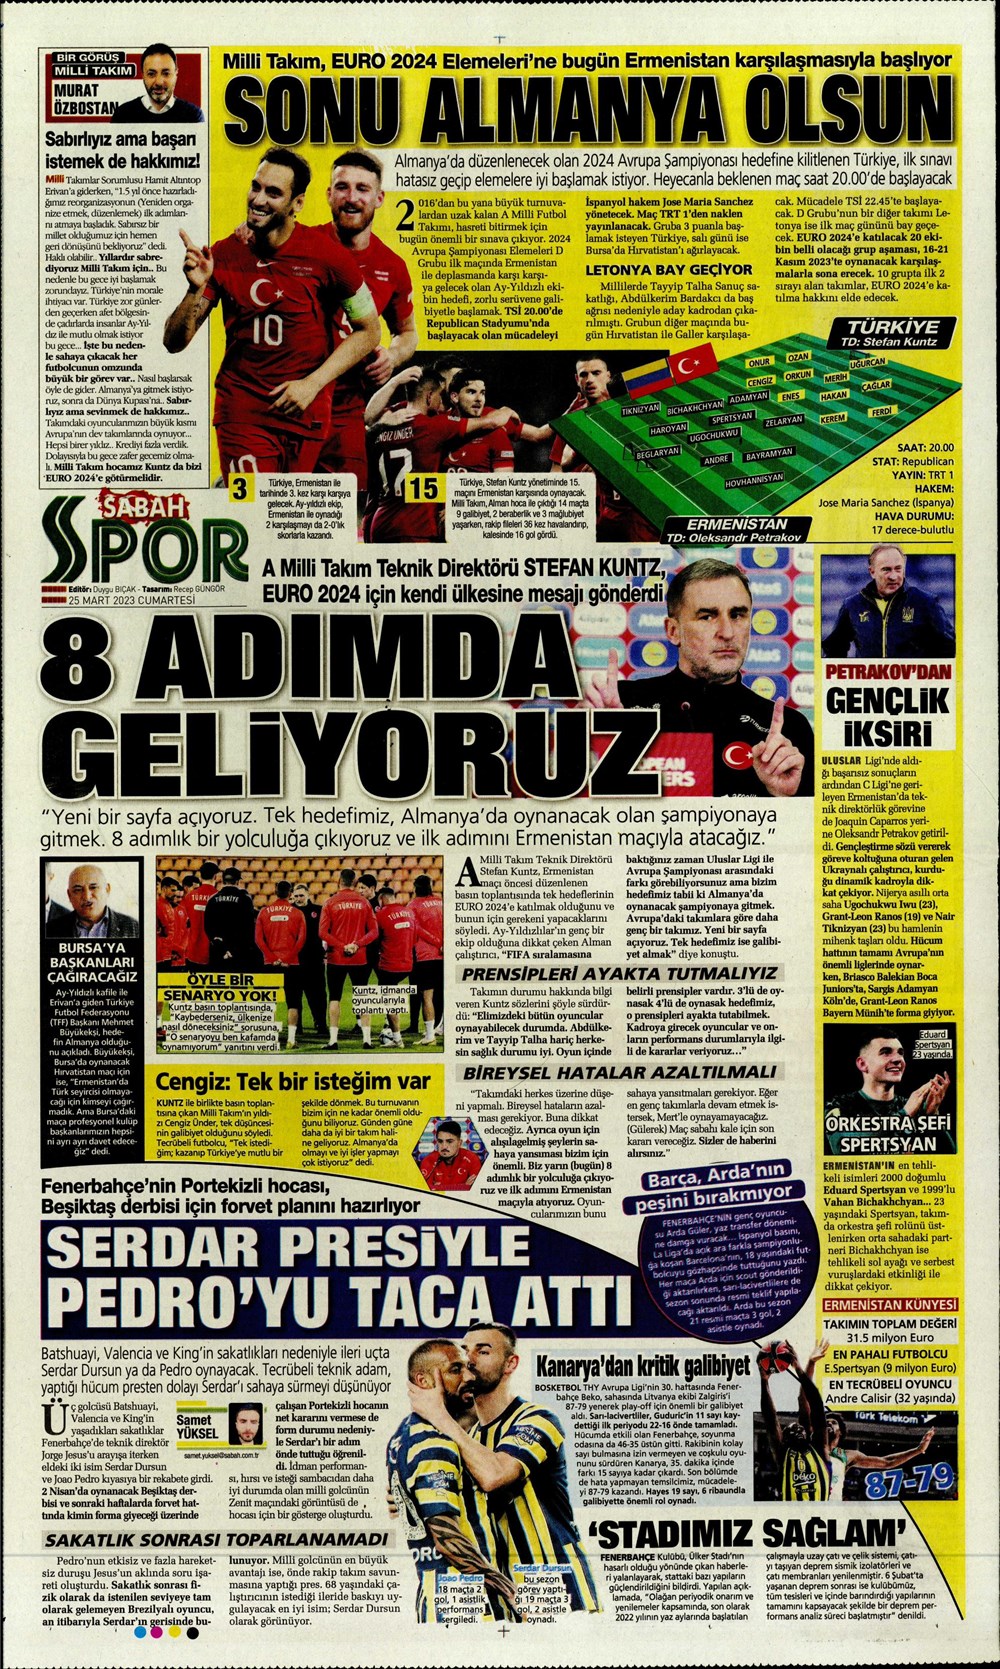 "Yeni bir başlangıç" - Sporun manşetleri - 27. Foto